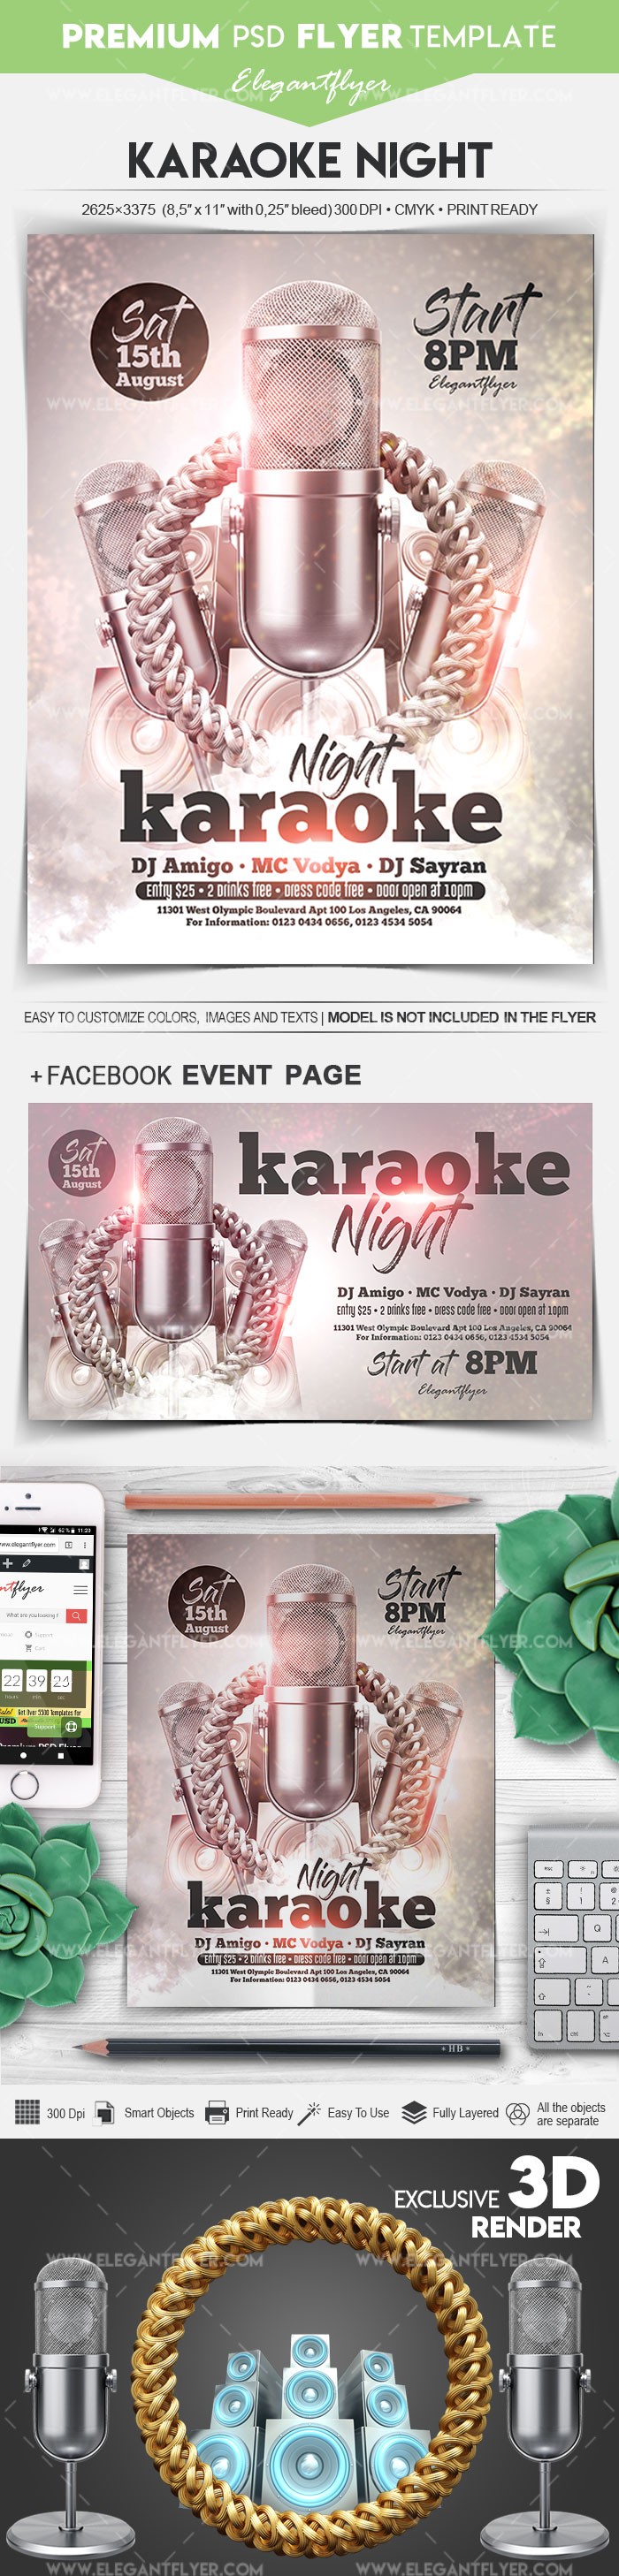 Karaoke Night by ElegantFlyer